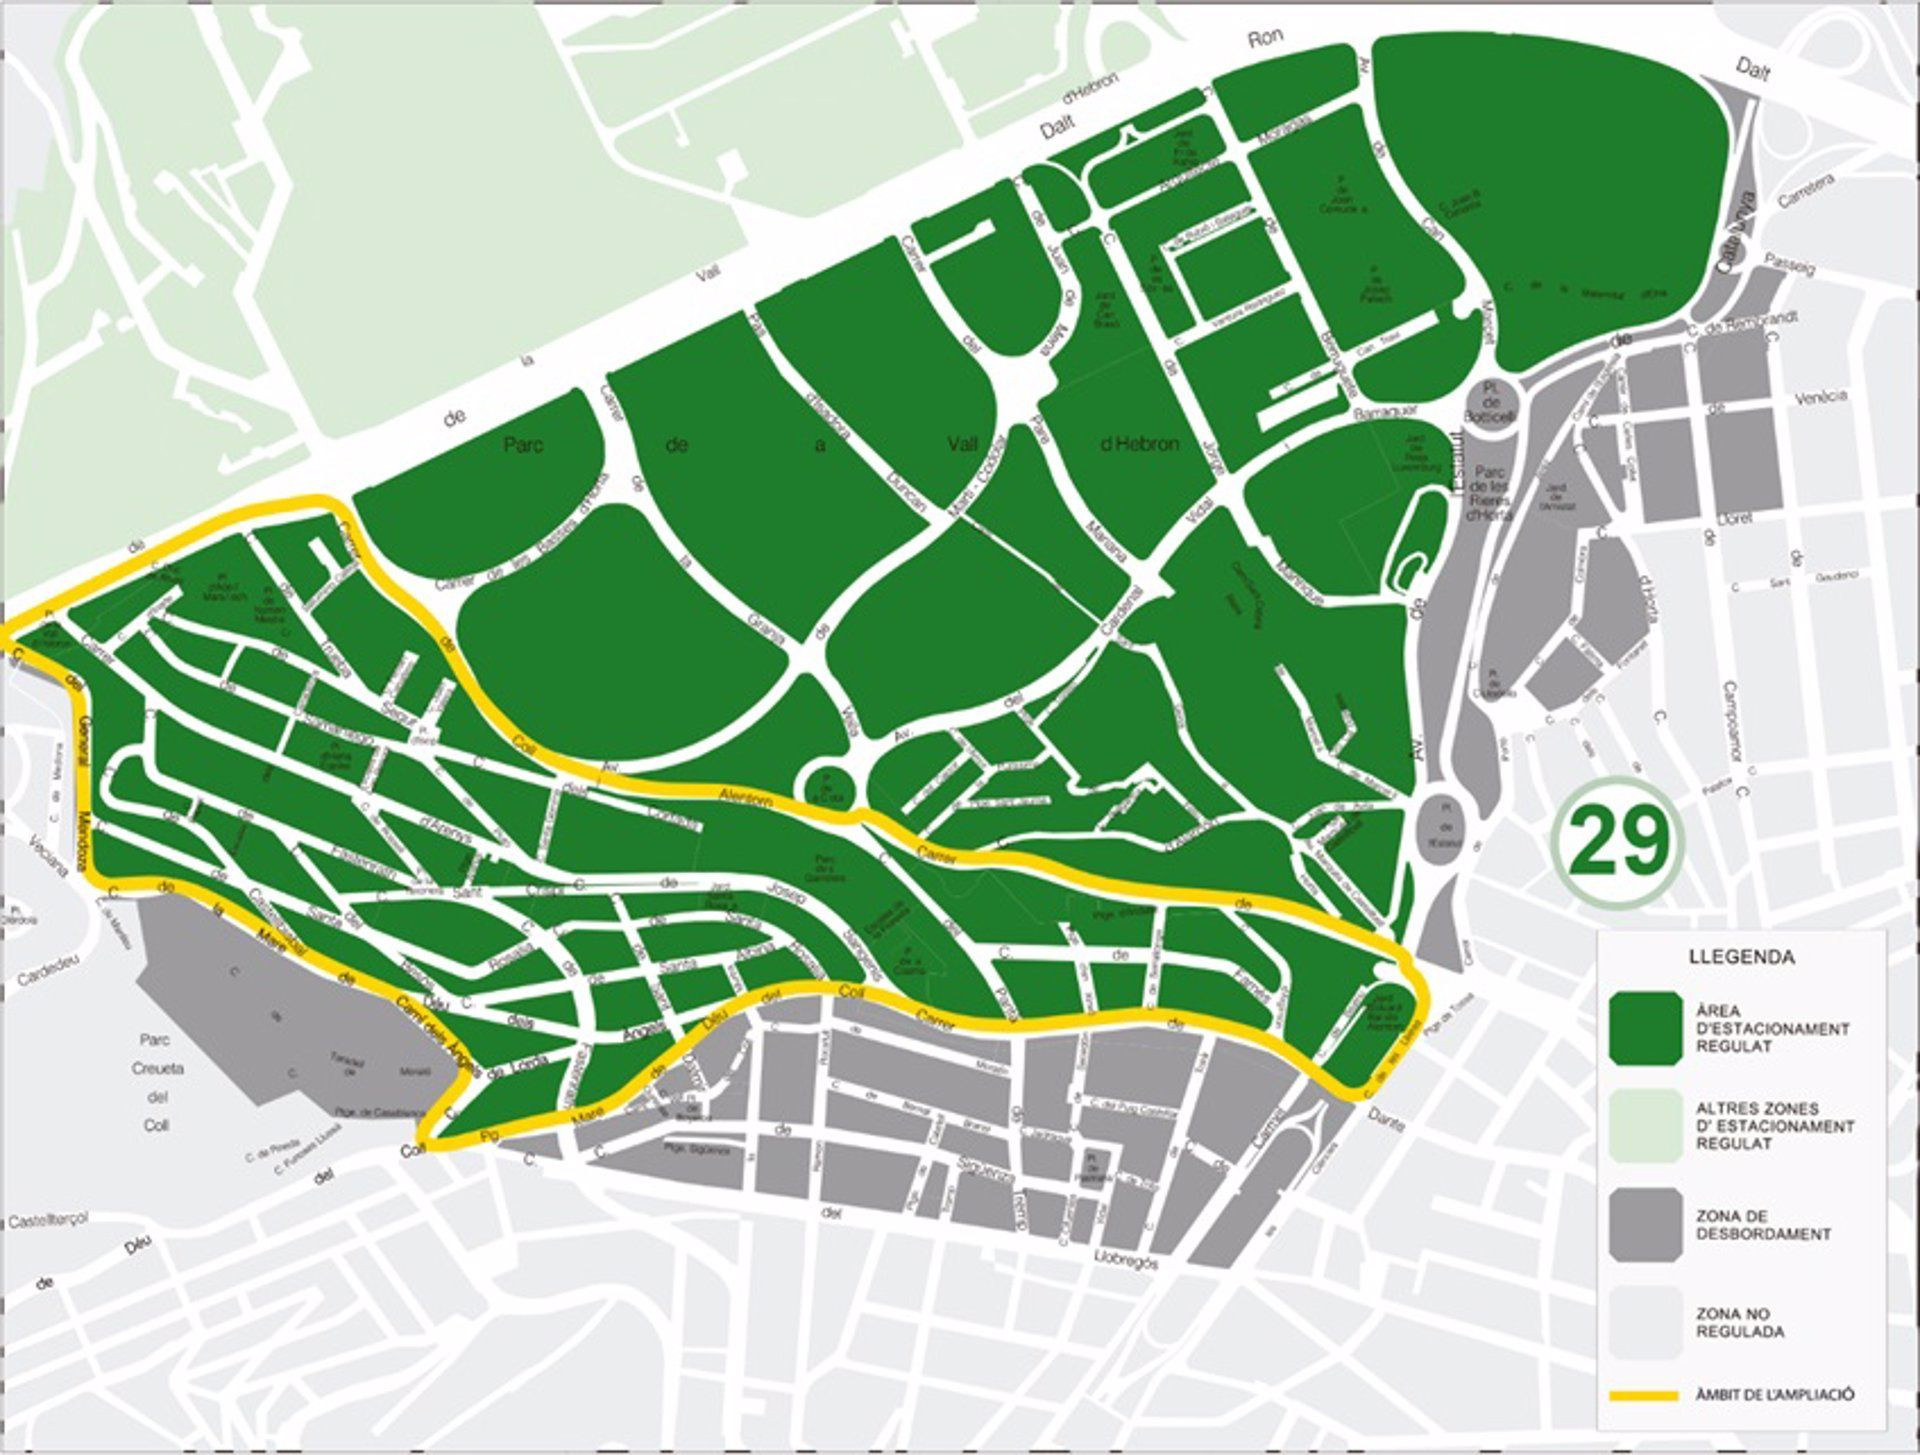 Así quedará la zona 29 de estacionamiento de Horta-Guinardó tras la ampliación / AYUNTAMIENTO DE BARCELONA